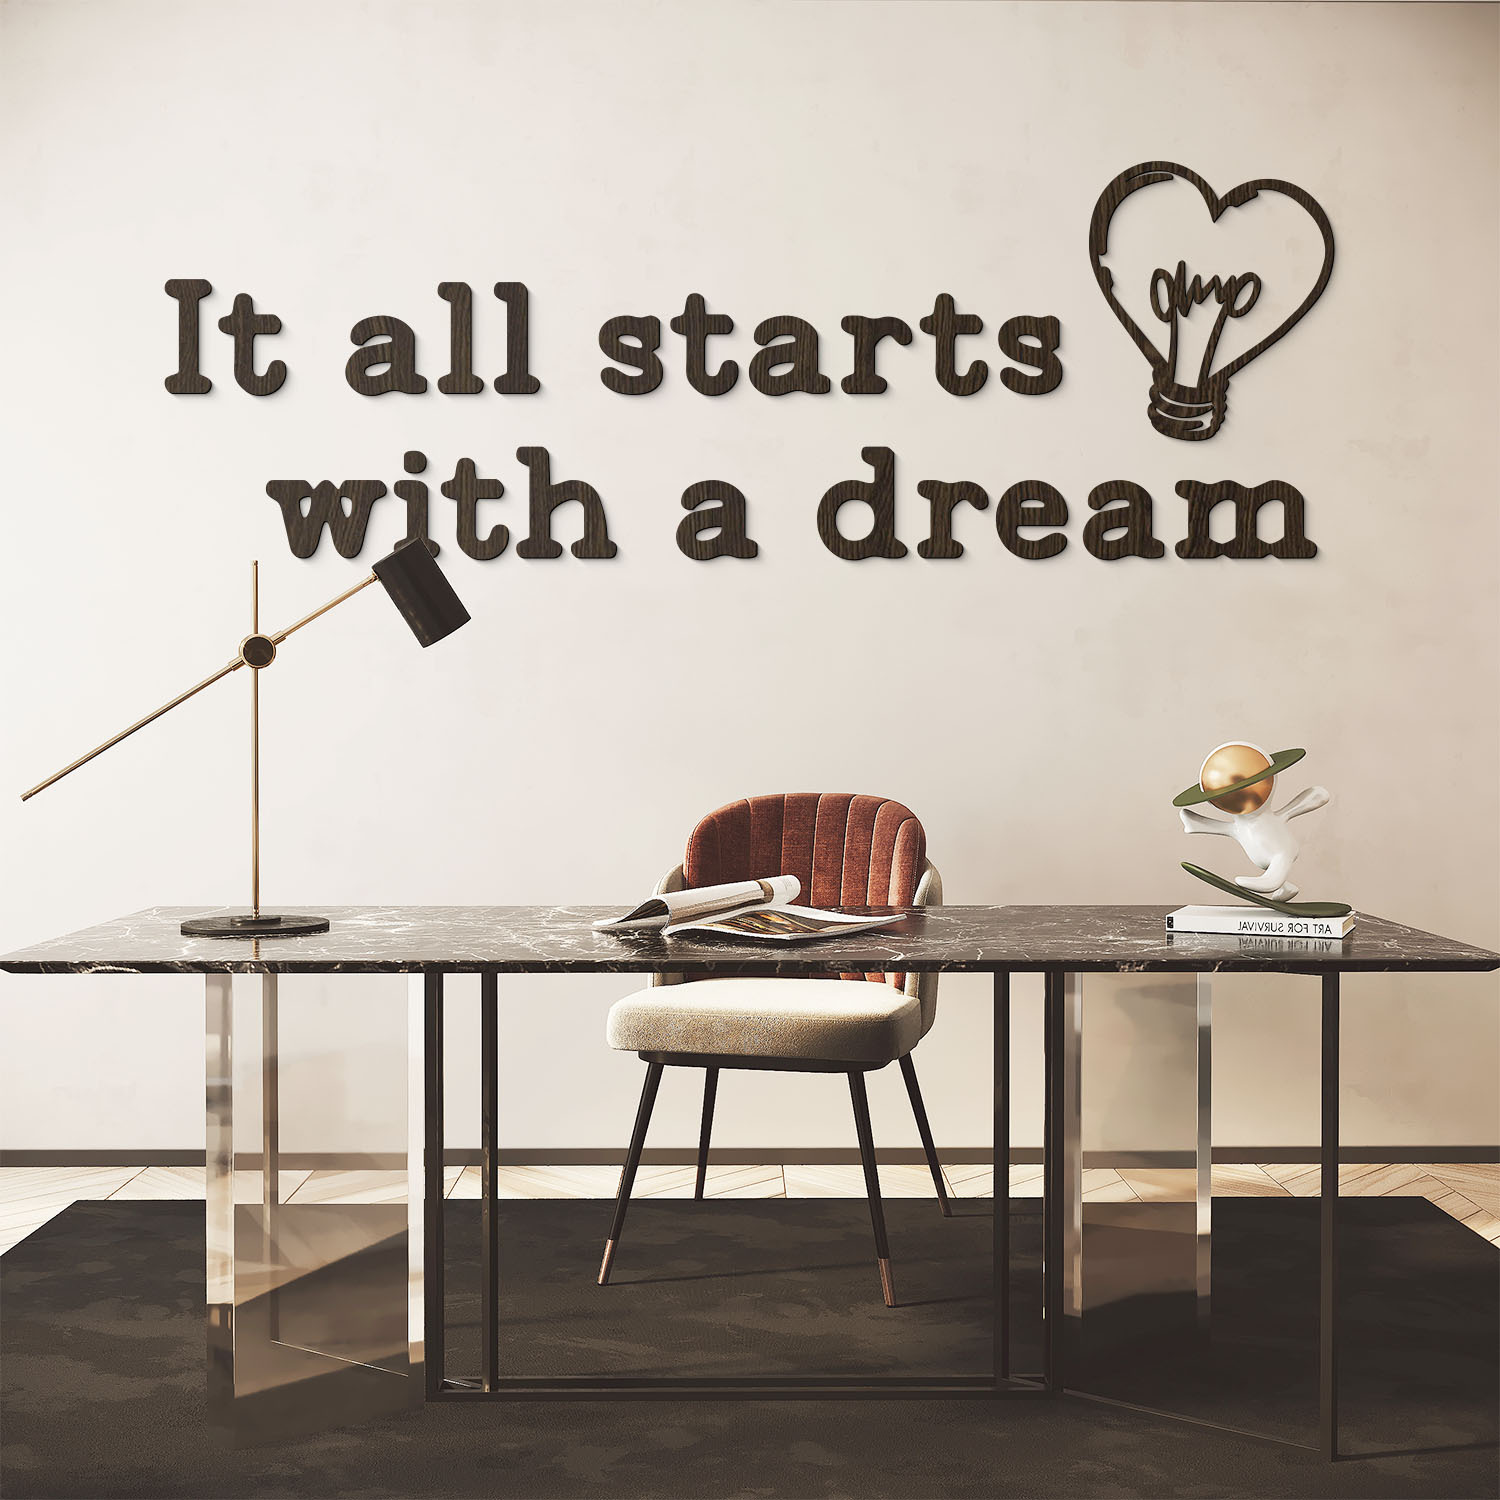 Motivační citát na zeď - It all starts with a dream